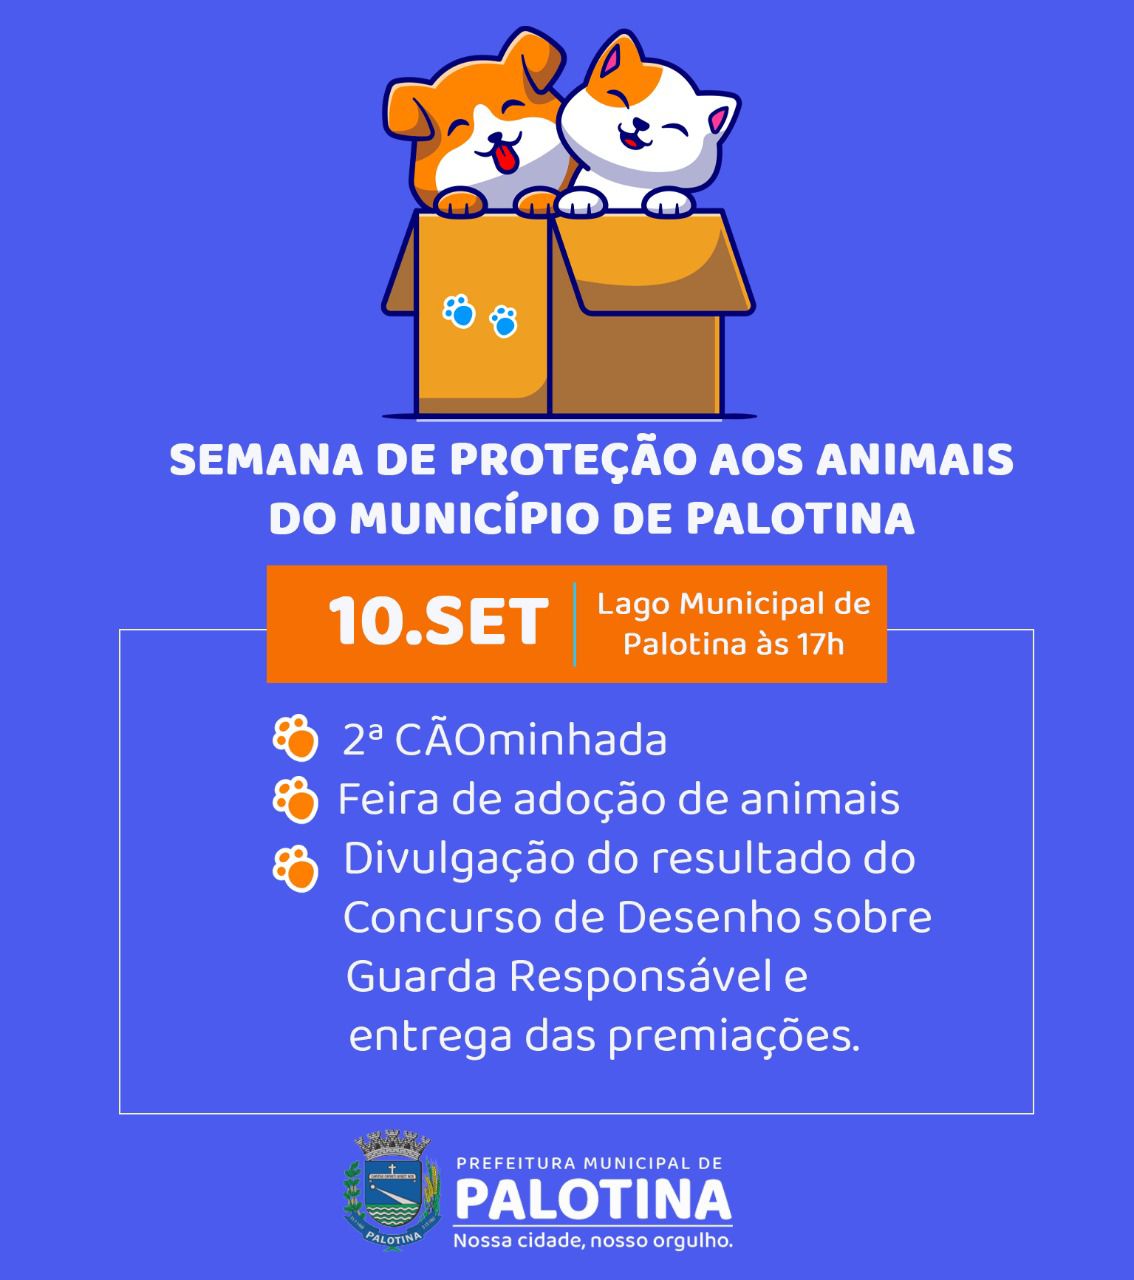 SEMANA DE PROTEÇÃO AOS ANIMAIS DO MUNICÍPIO DE PALOTINA 